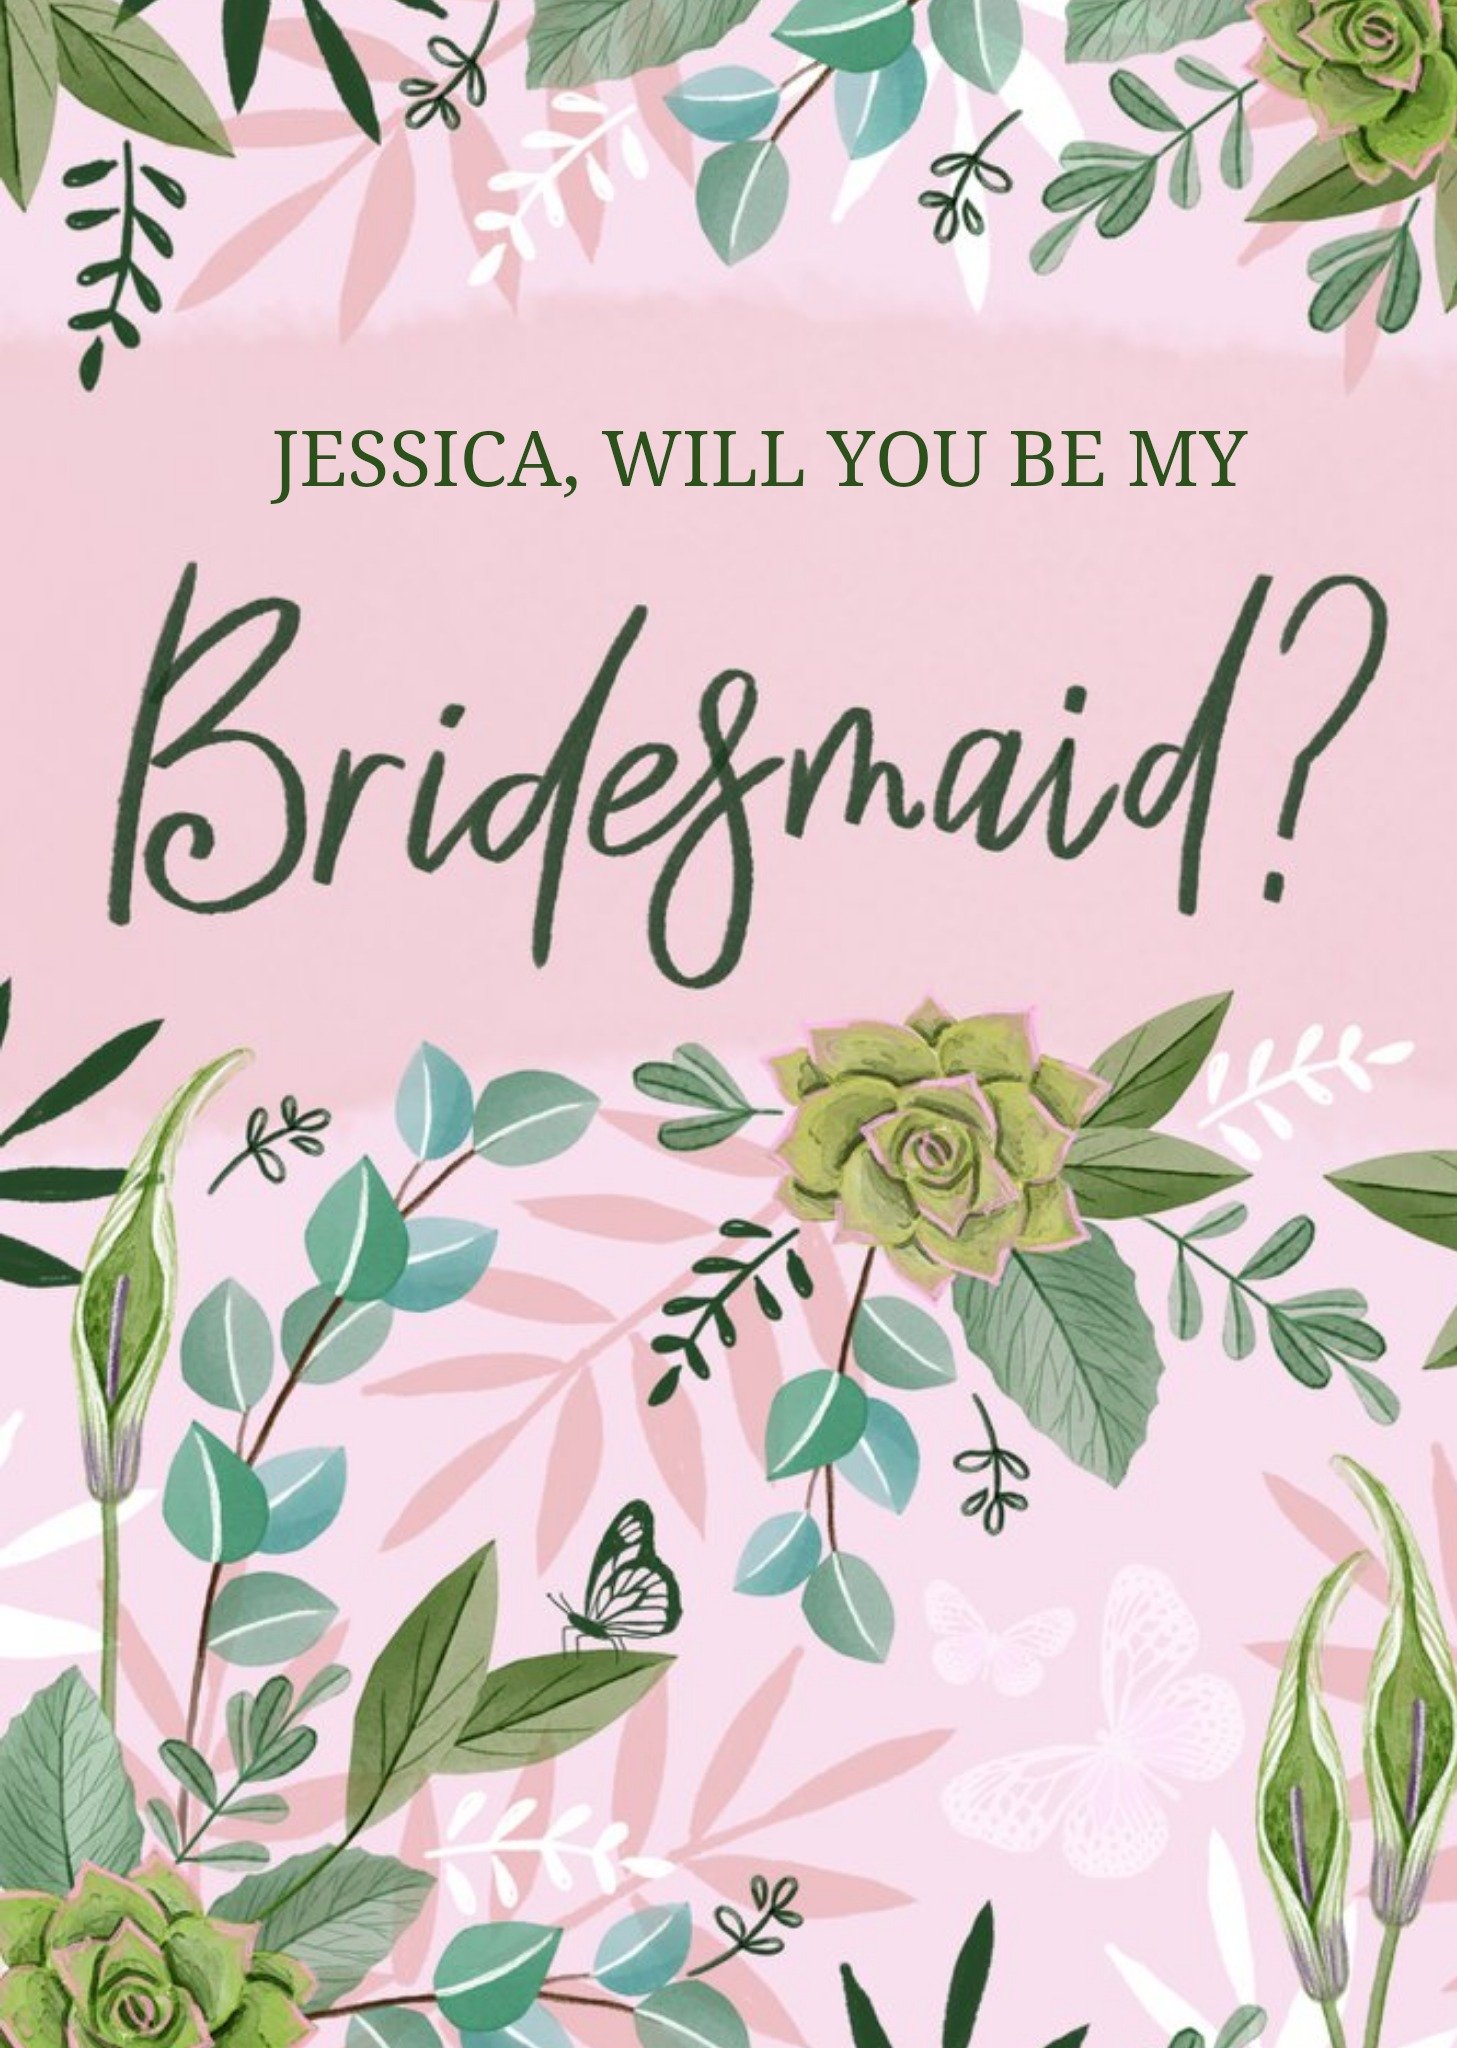 Okey Dokey Design Floral Illustratation Will You Be My Bridesmaid Wedding Card Ecard